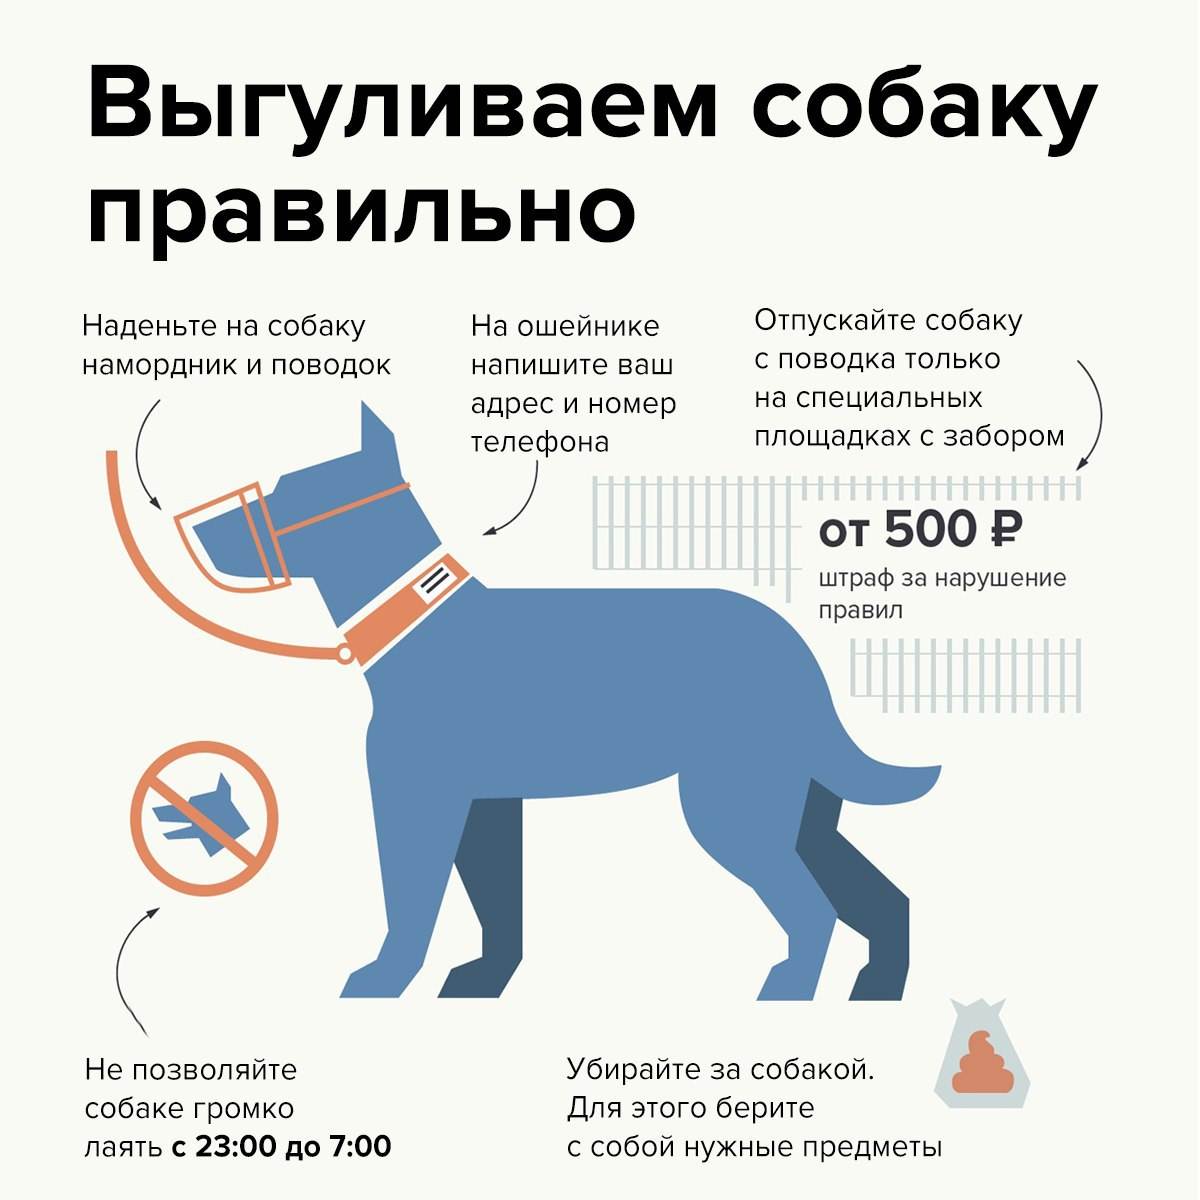 Правила и закон о выгуле собак 2020: намордники, поводки и их отсутствие, где можно гулять и ответственность за нарушение